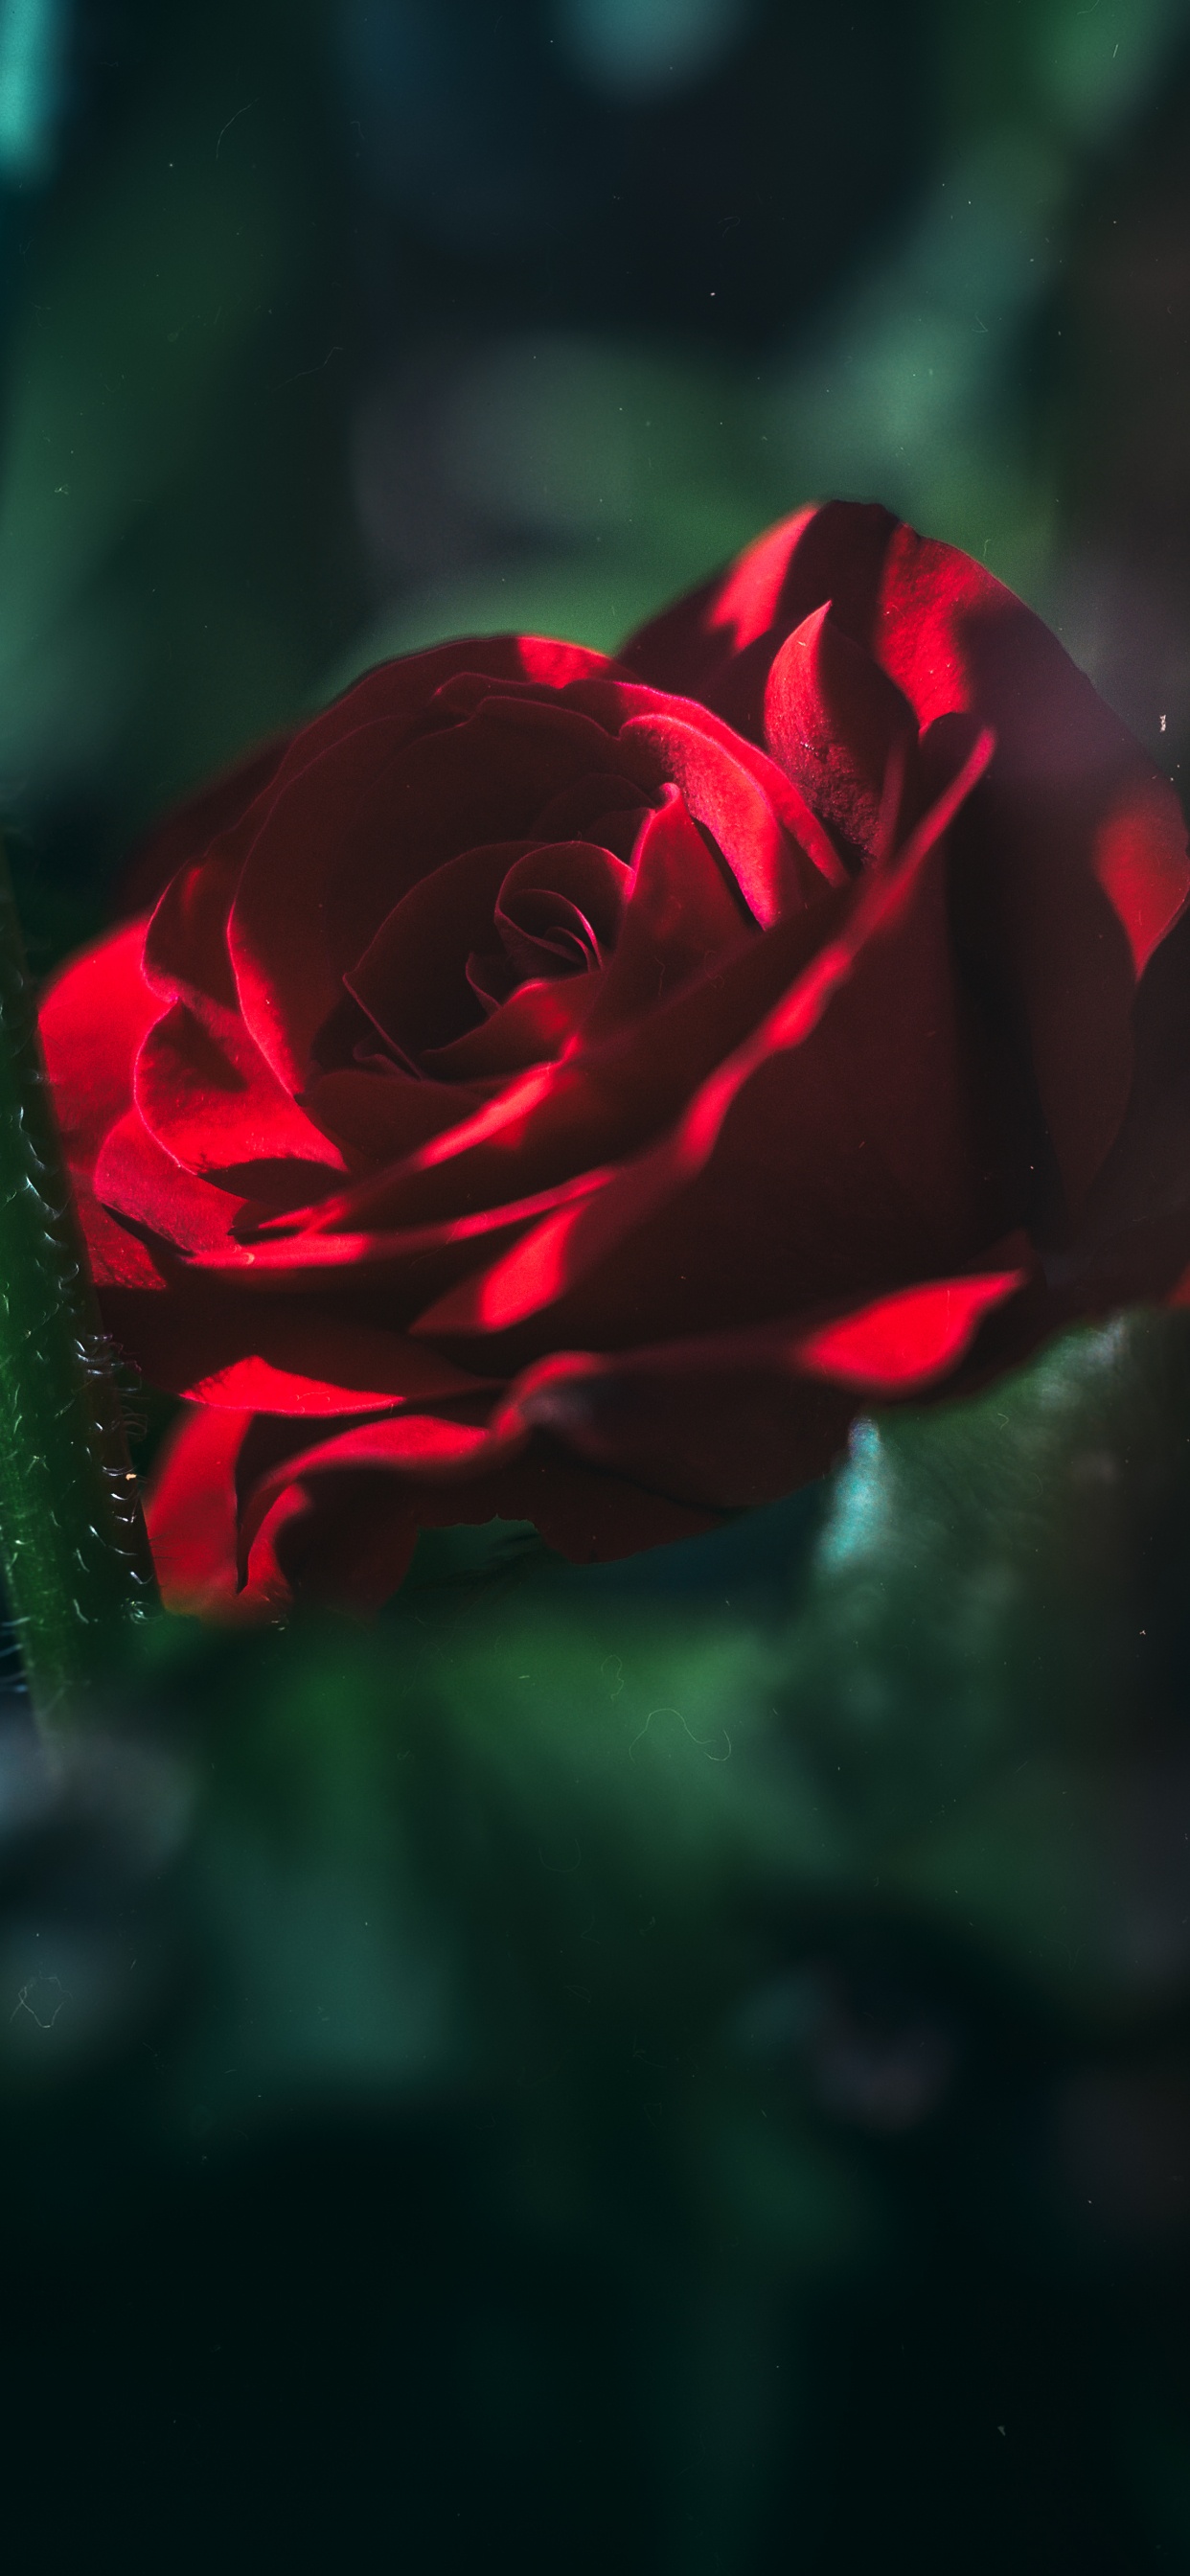 Rosa Roja en Flor en Fotografía de Cerca. Wallpaper in 1242x2688 Resolution